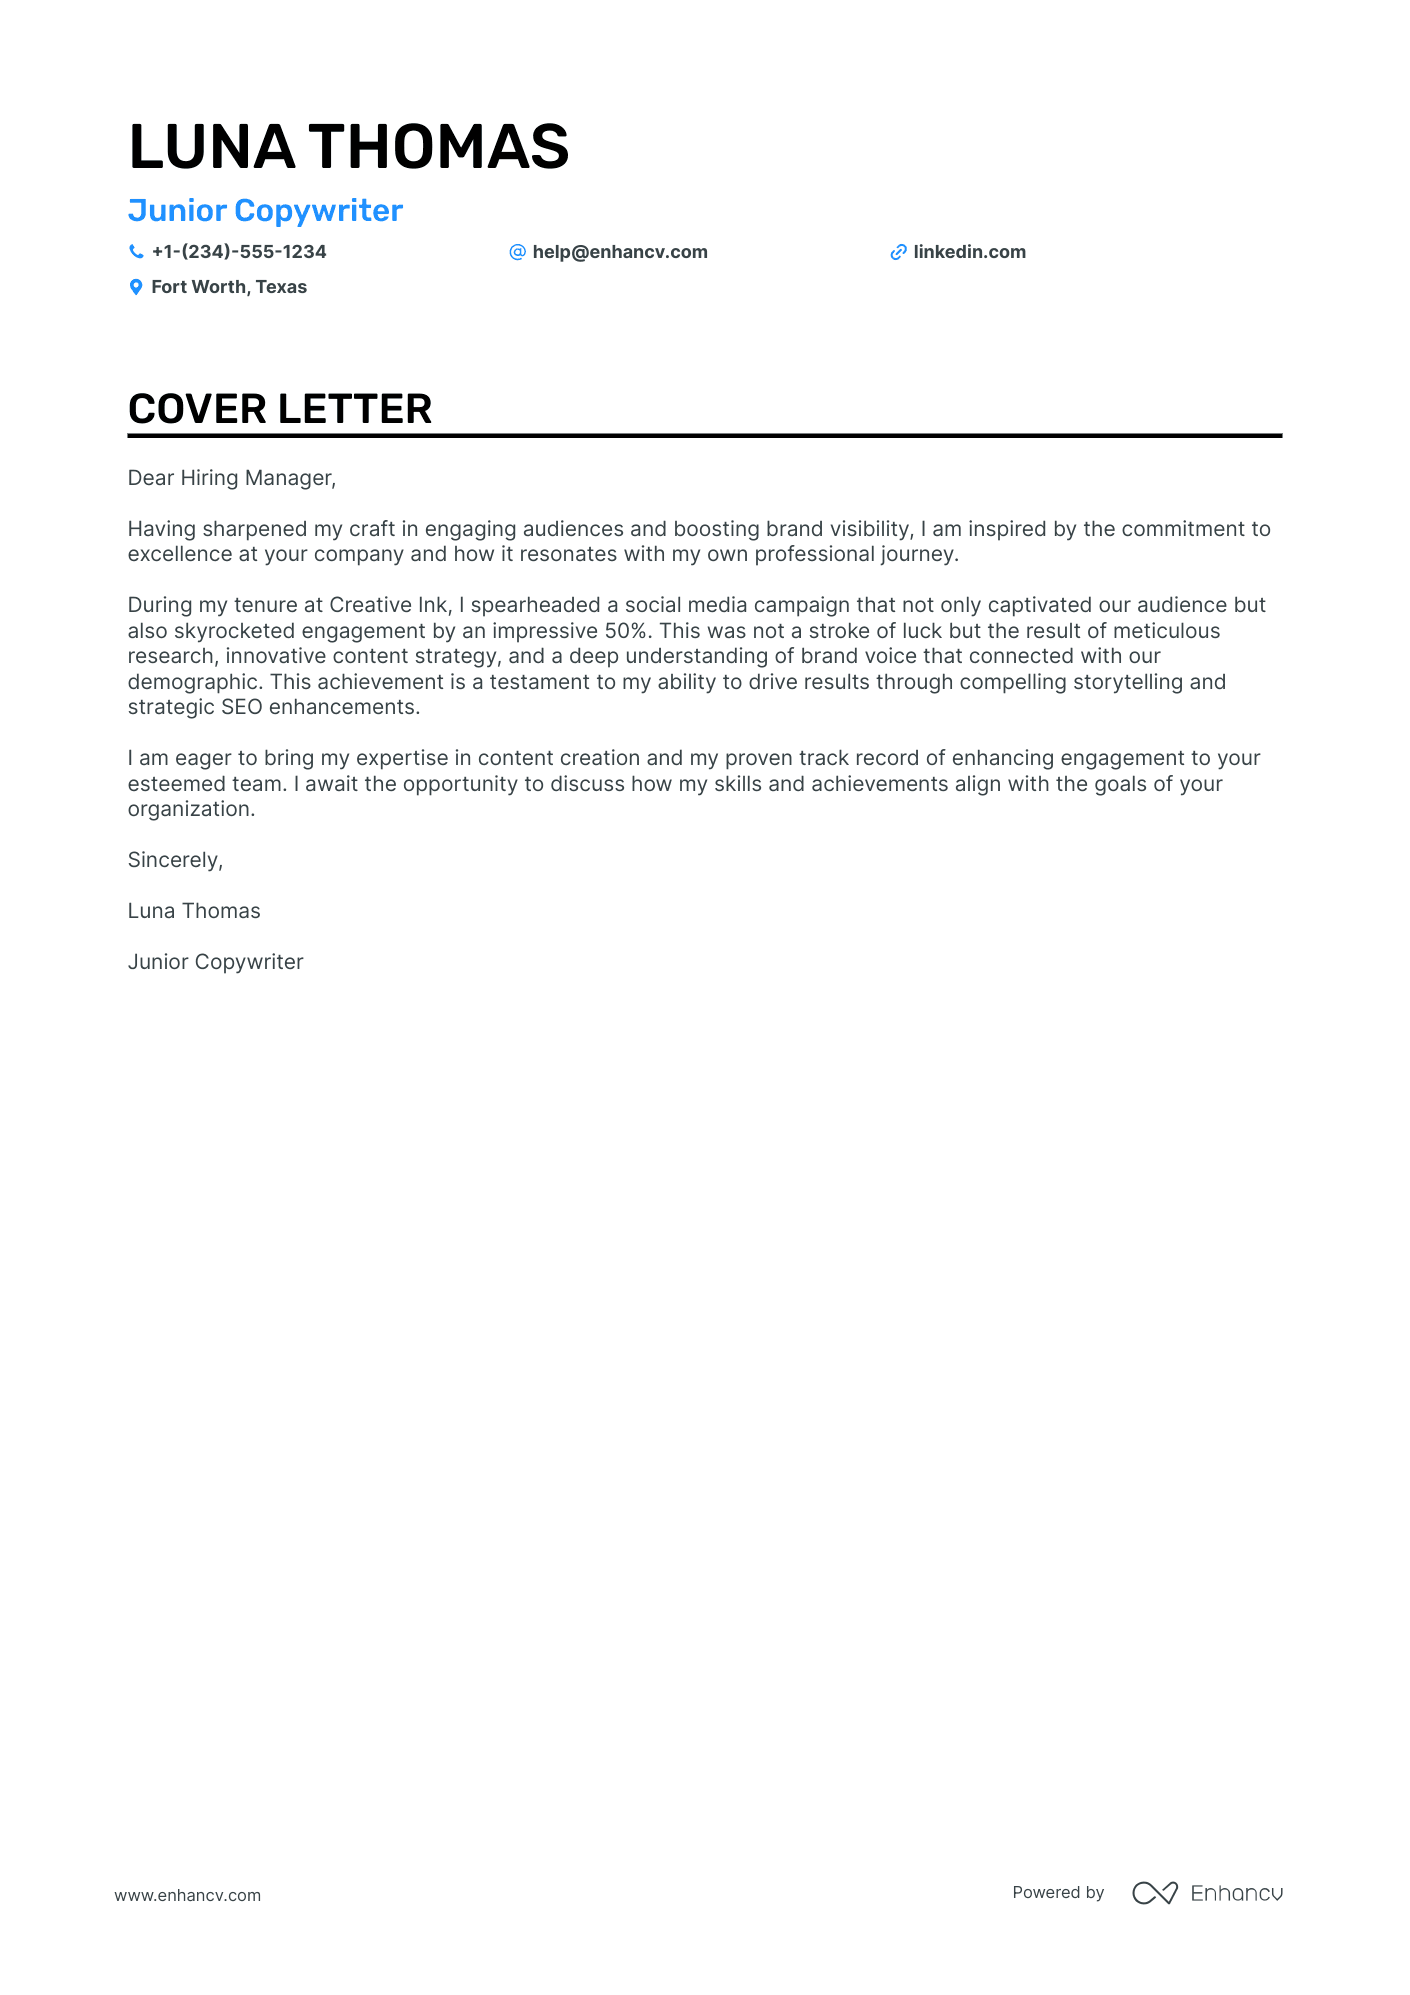 cover letter for copywriter